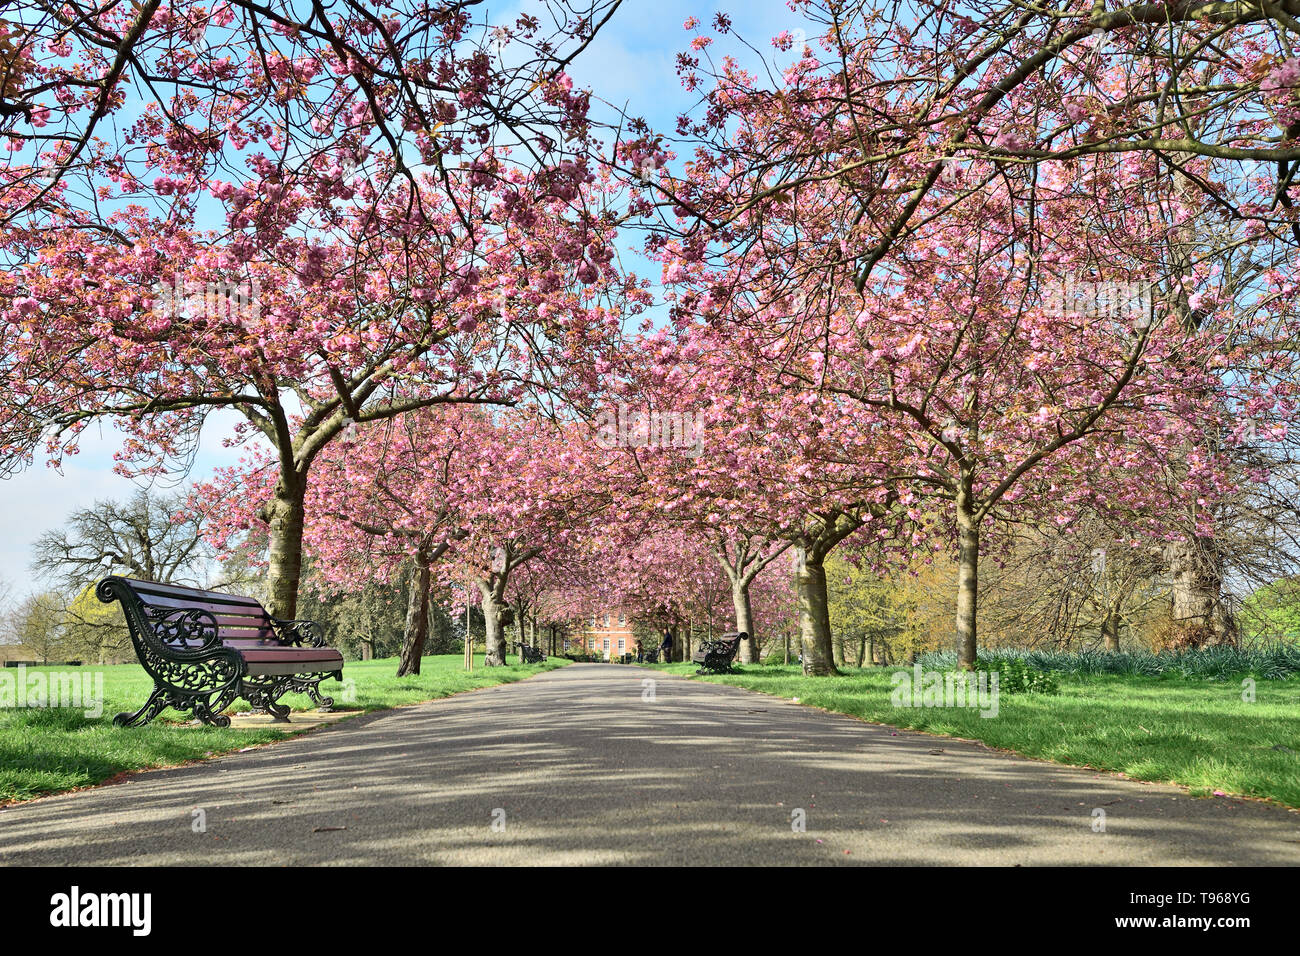 Photographié dans le parc Royal de Greenwich London UK Avril 2019 Banque D'Images